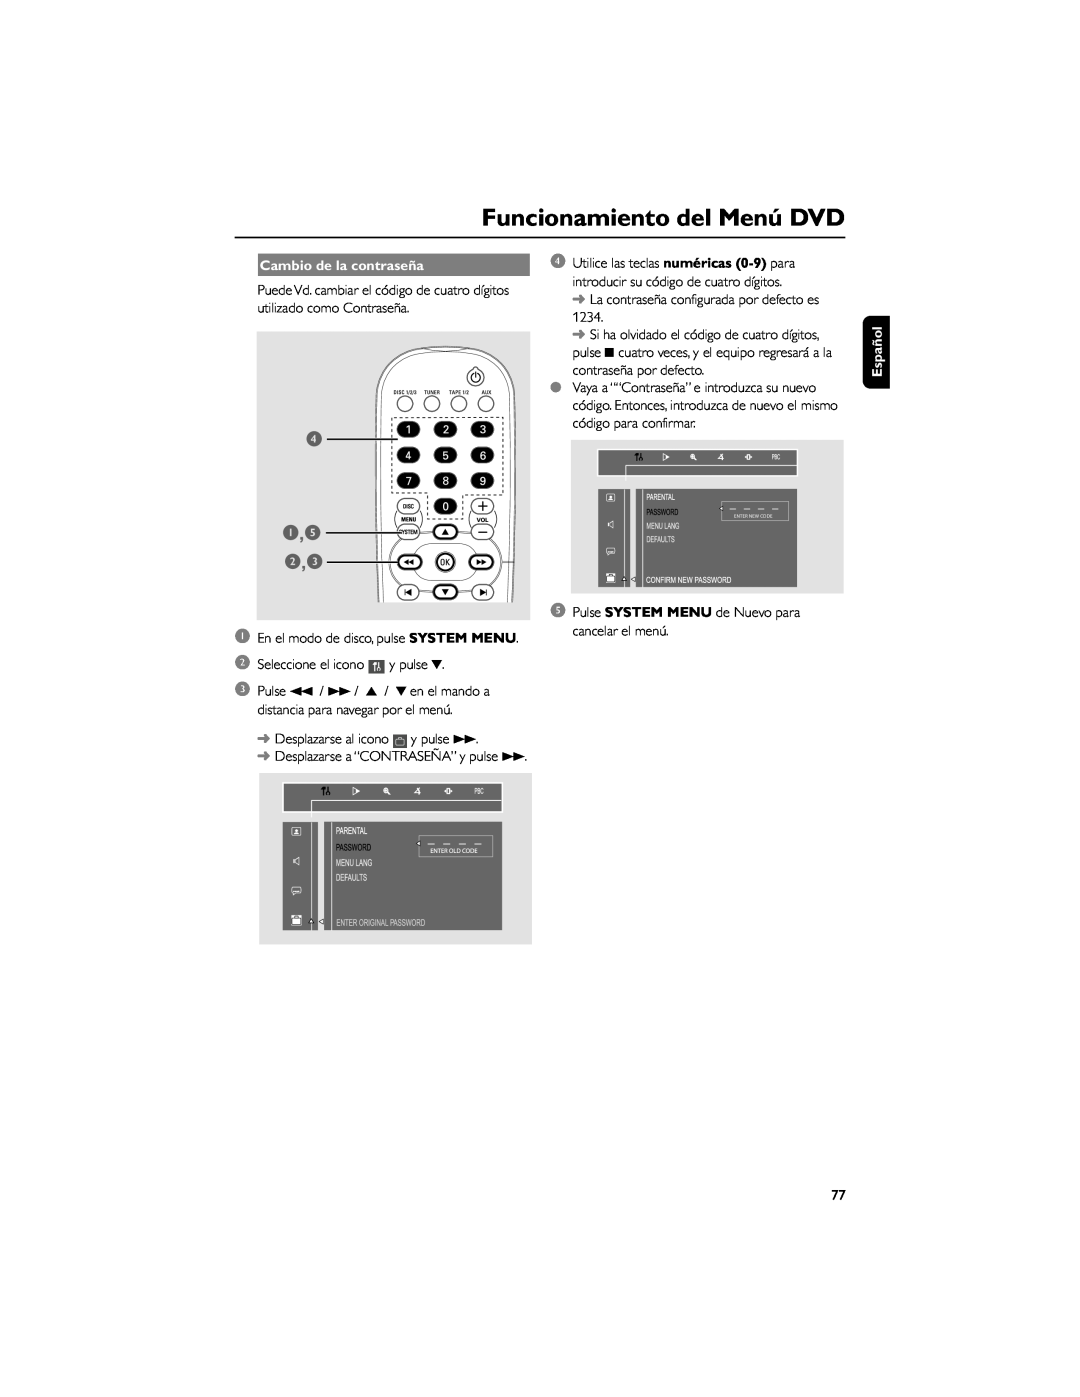 Philips FWD792 user manual Cambio de la contraseña, Funcionamiento del Menú DVD, Español 